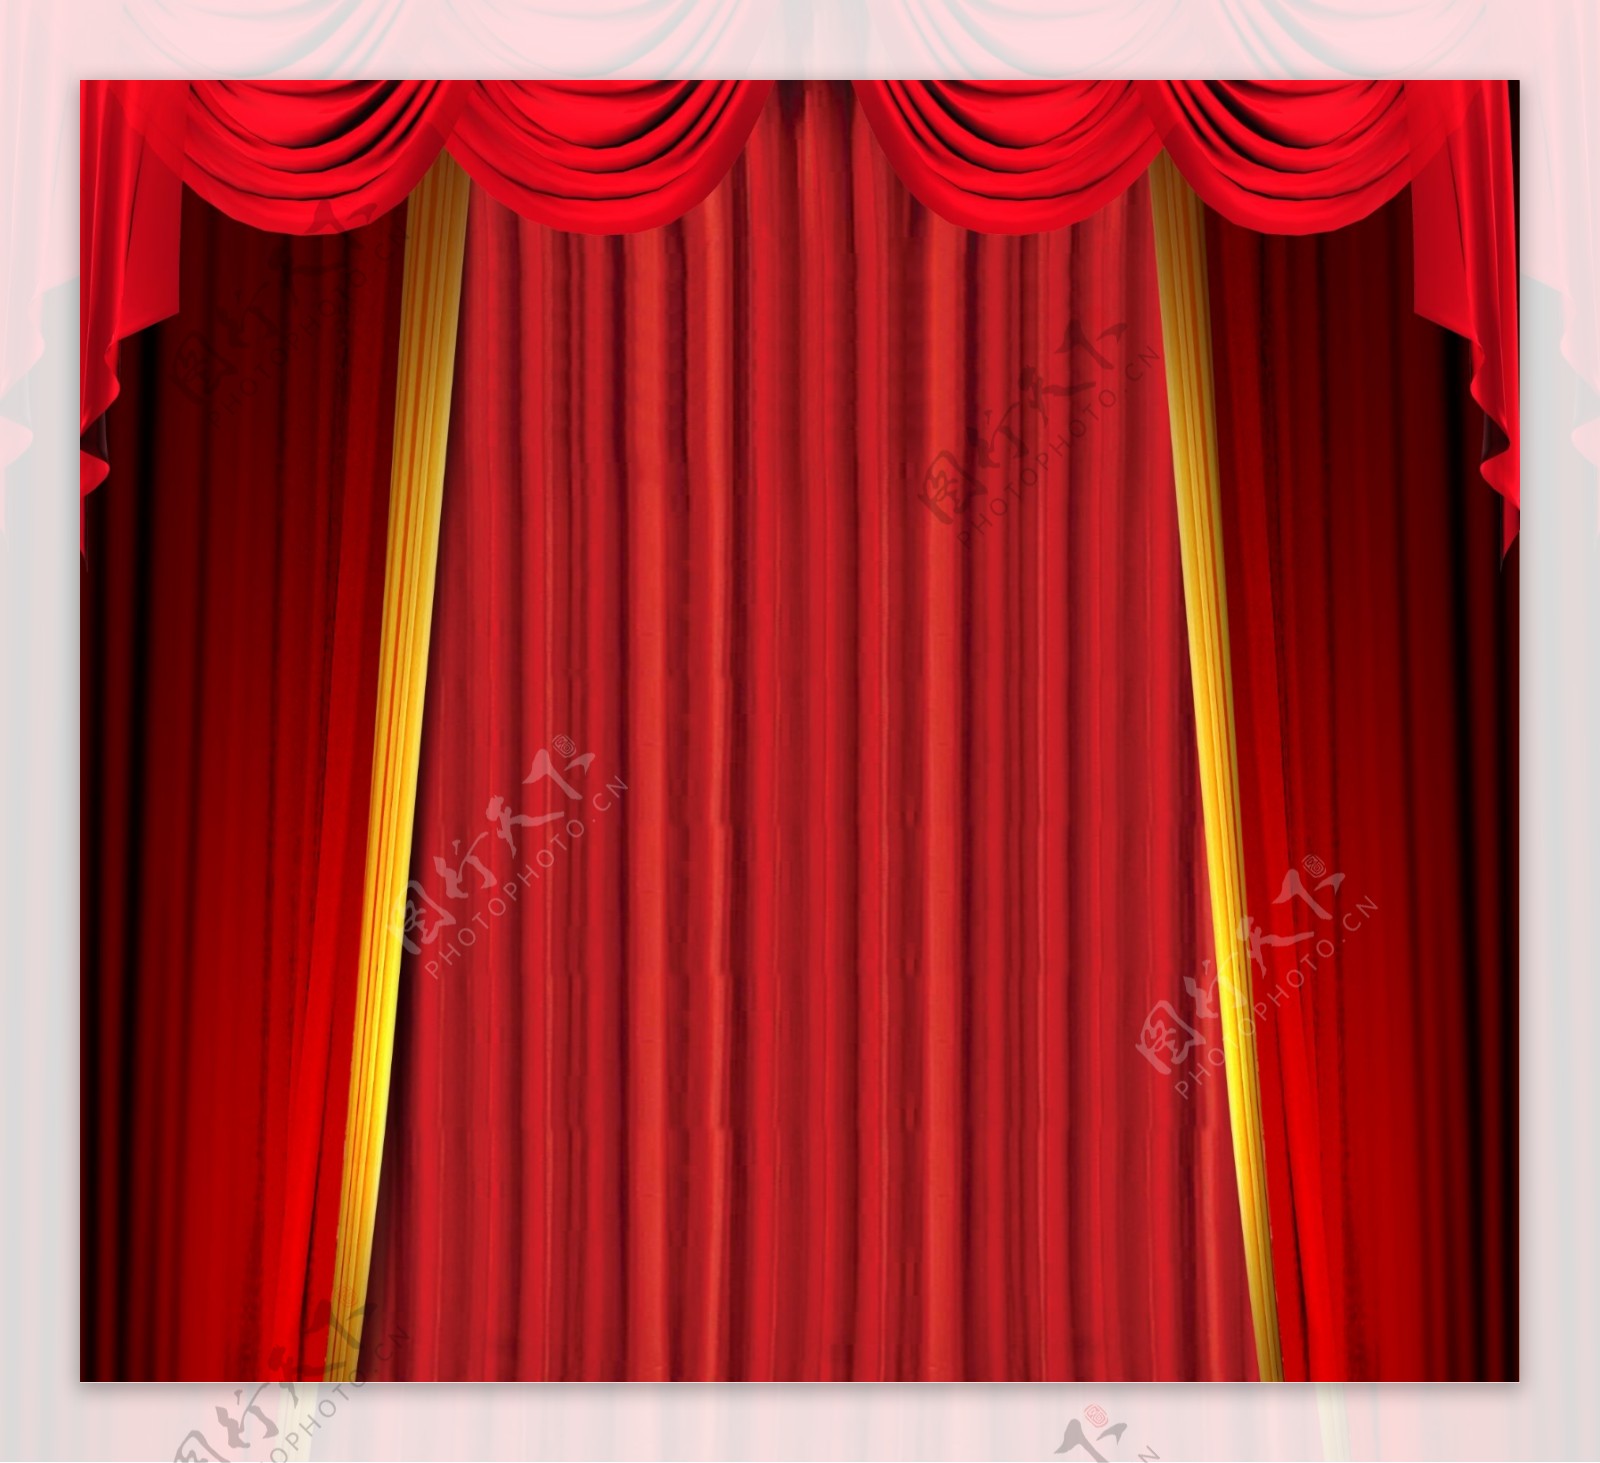 颁奖舞台适用的红色幕布背景